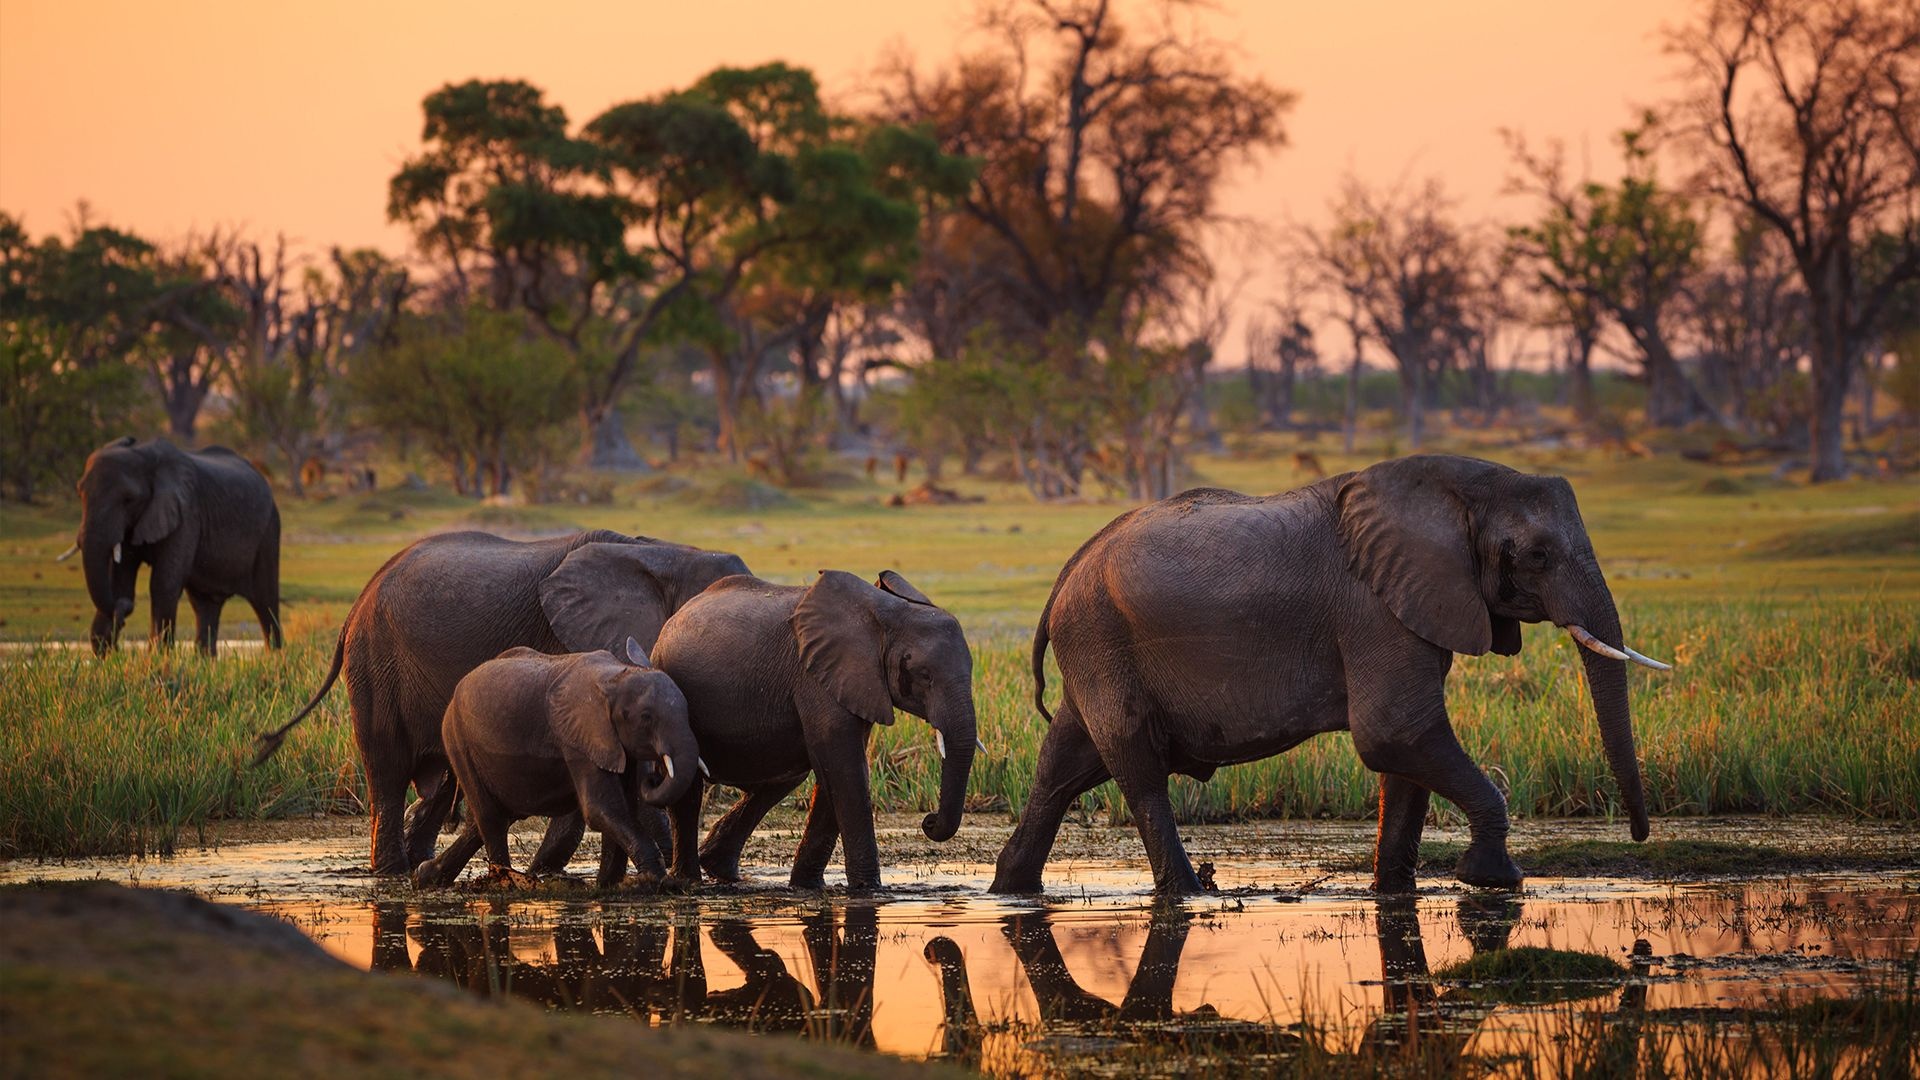 Okavango Delta, Springbok expeditions, African wilderness, Nature's beauty, 1920x1080 Full HD Desktop